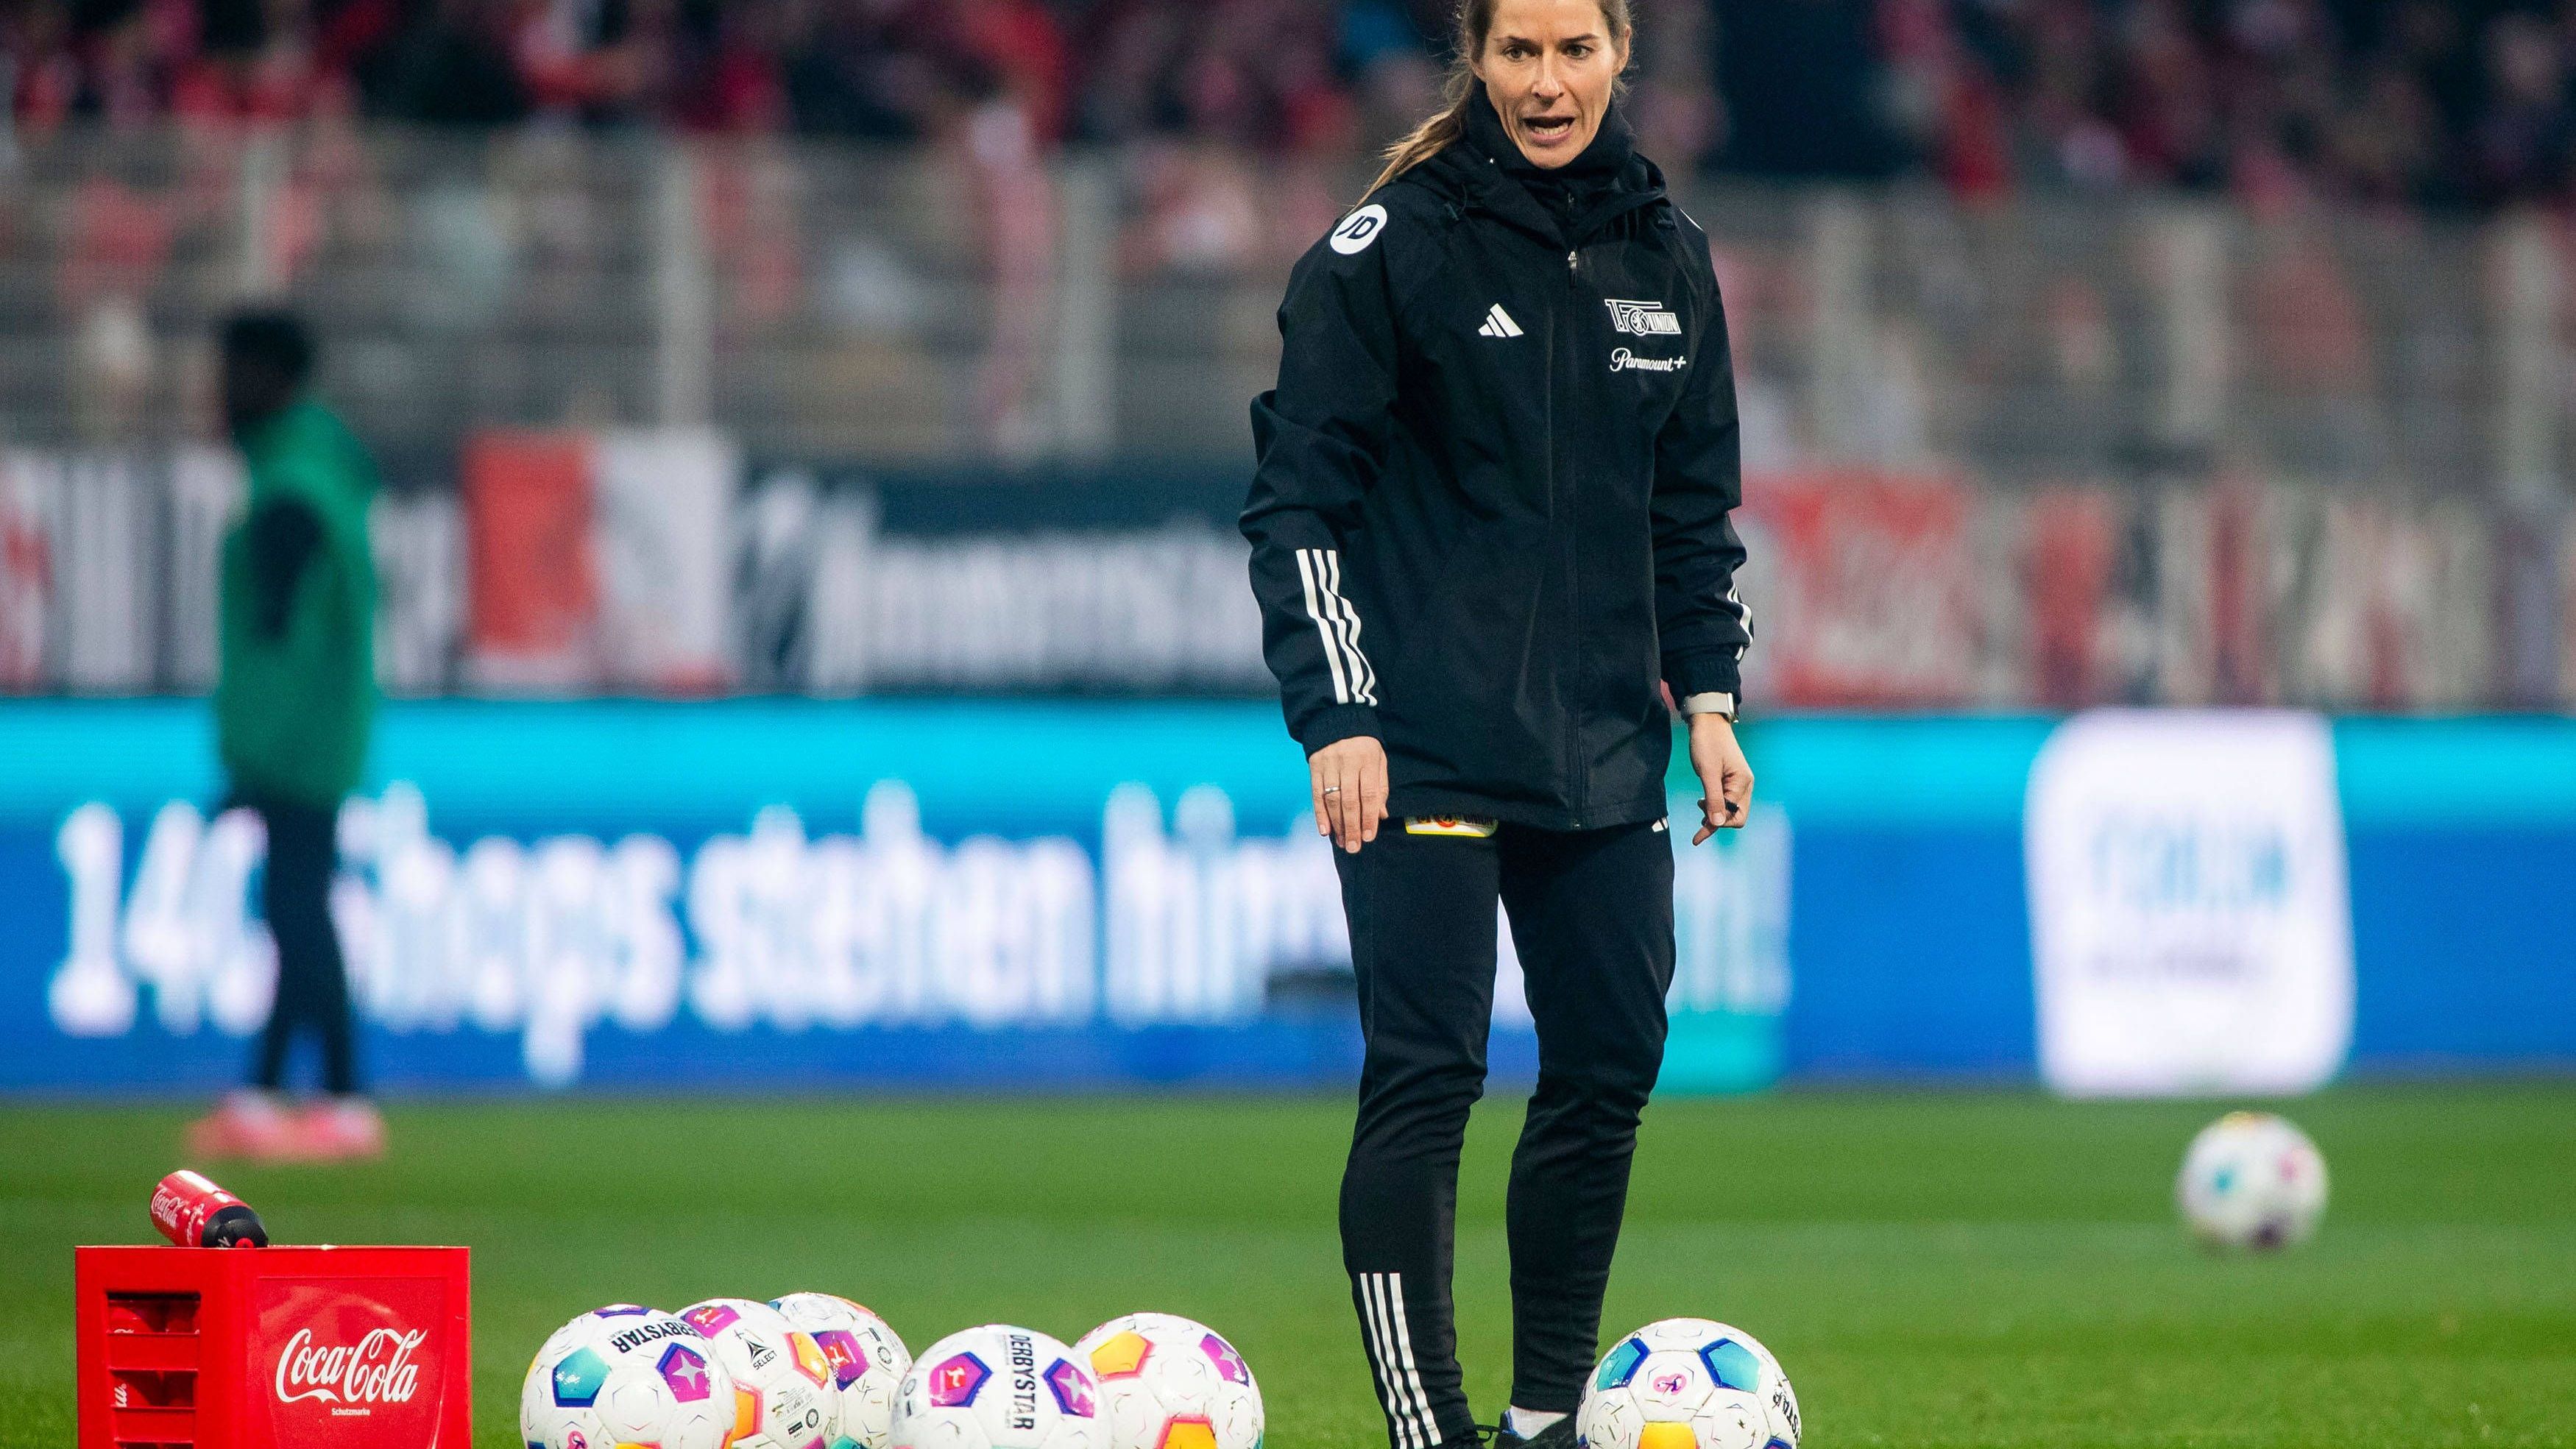 <strong>Marie-Louise Eta schreibt Bundesliga-Geschichte</strong><br>Eta machte vor dem Spiel einen hochkonzentrierten Eindruck. Dass ihr Debüt durchaus historisch war, dürfte sie während des Spiels nicht sonderlich interessiert haben.